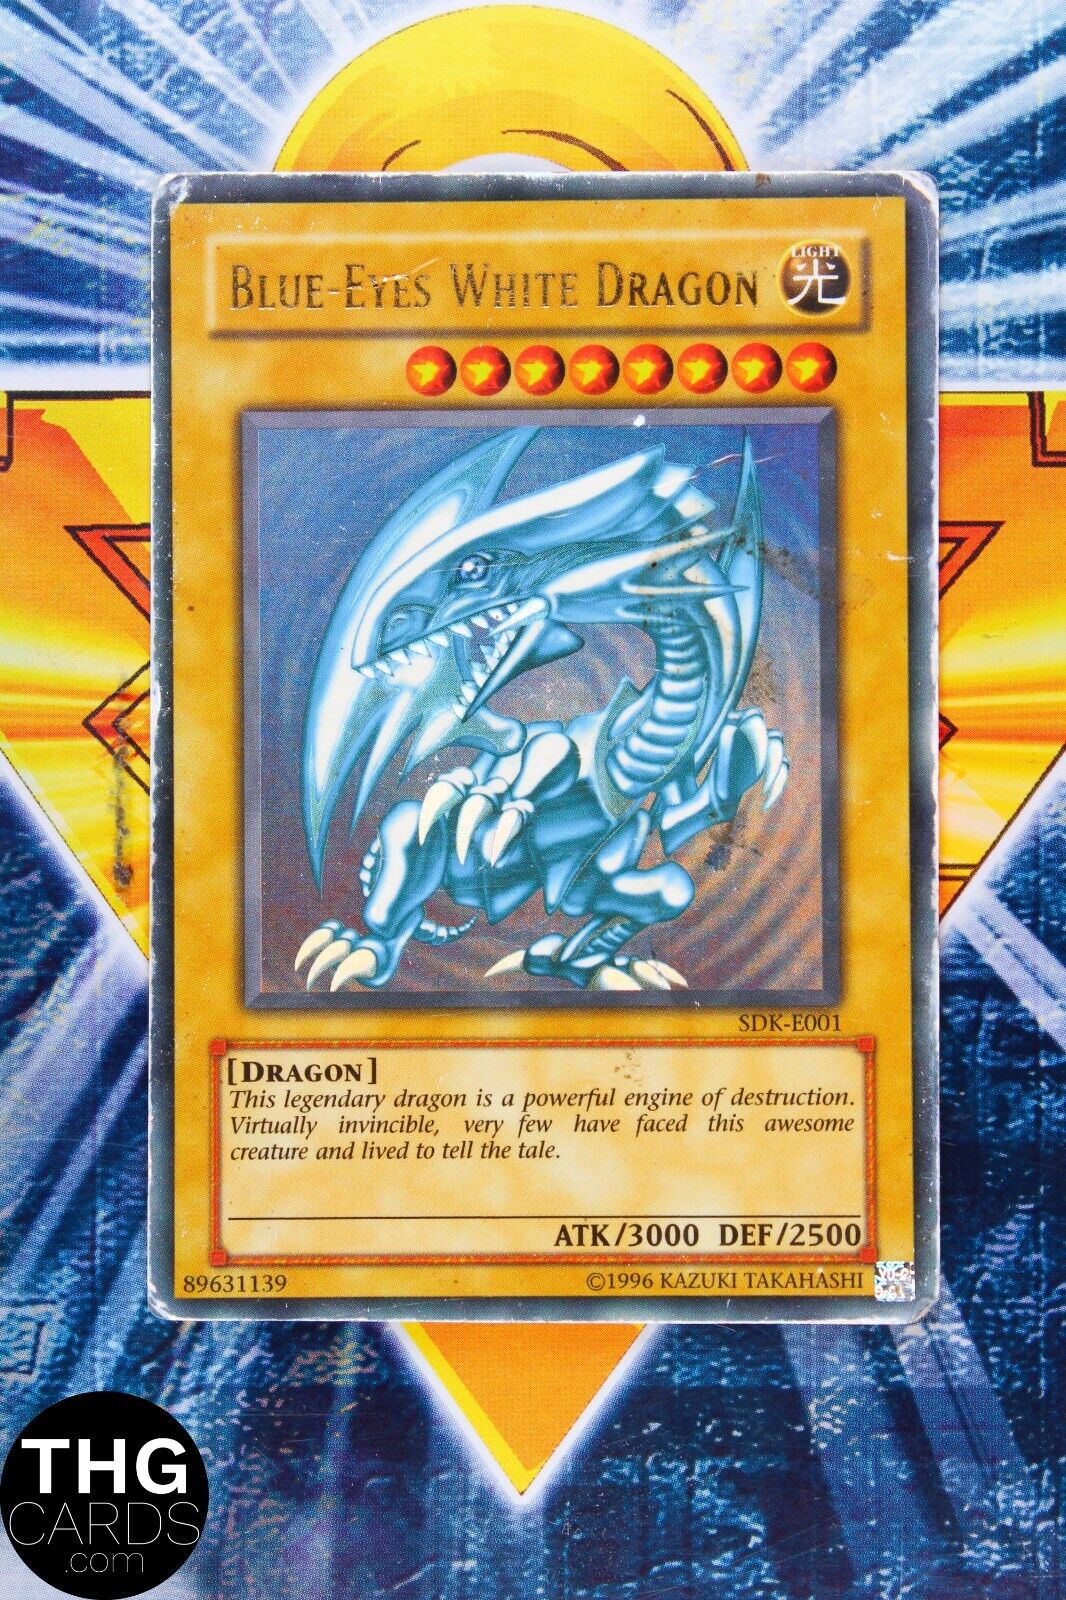 Blue Eyes White Dragon SDK-E001 Ultra Rare Yugioh Card 2